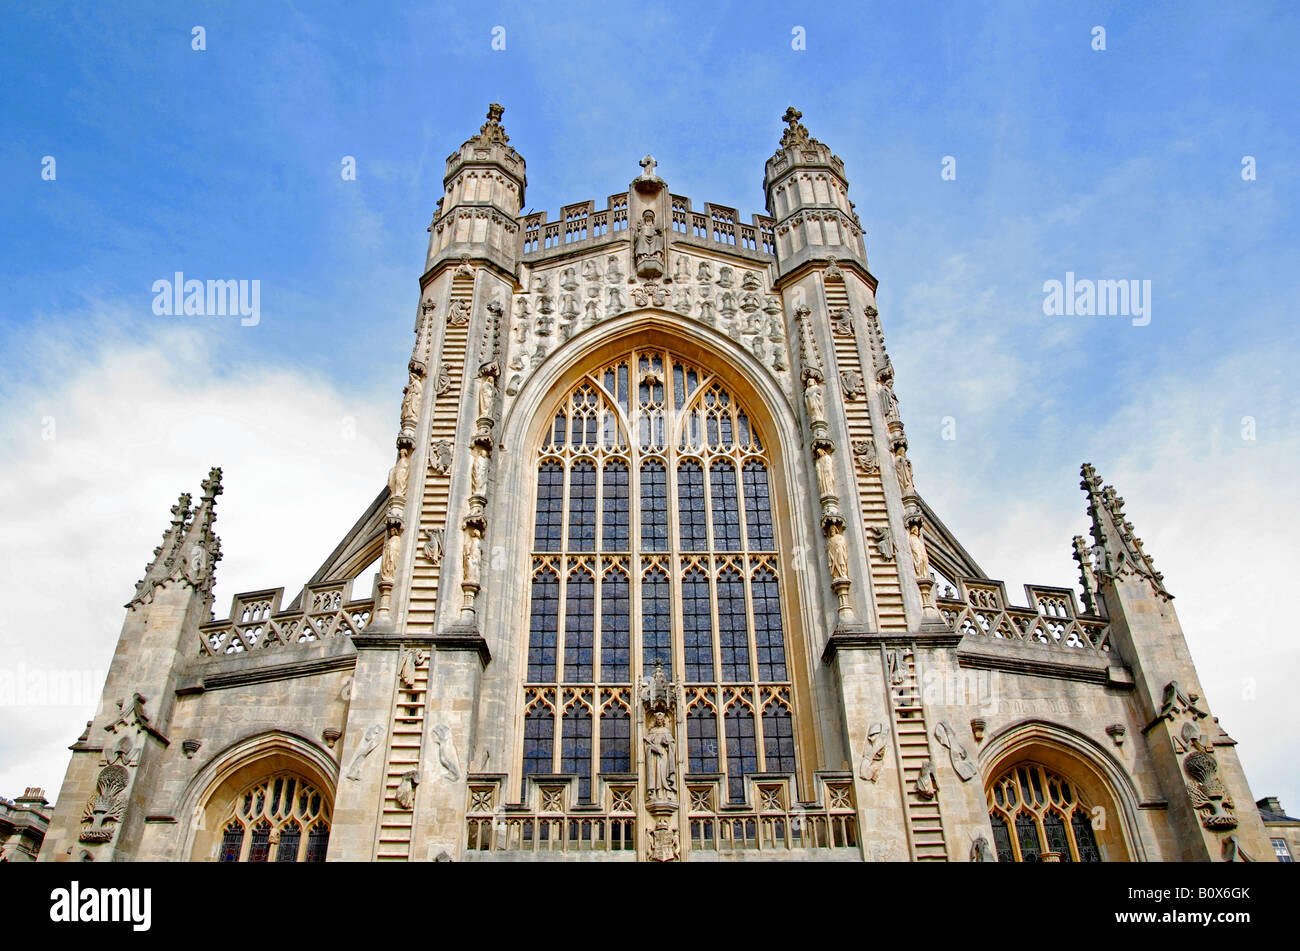 die feine Architektur auf die vordere Ansicht der Abteikirche von Bath, Somerset, england Stockfoto